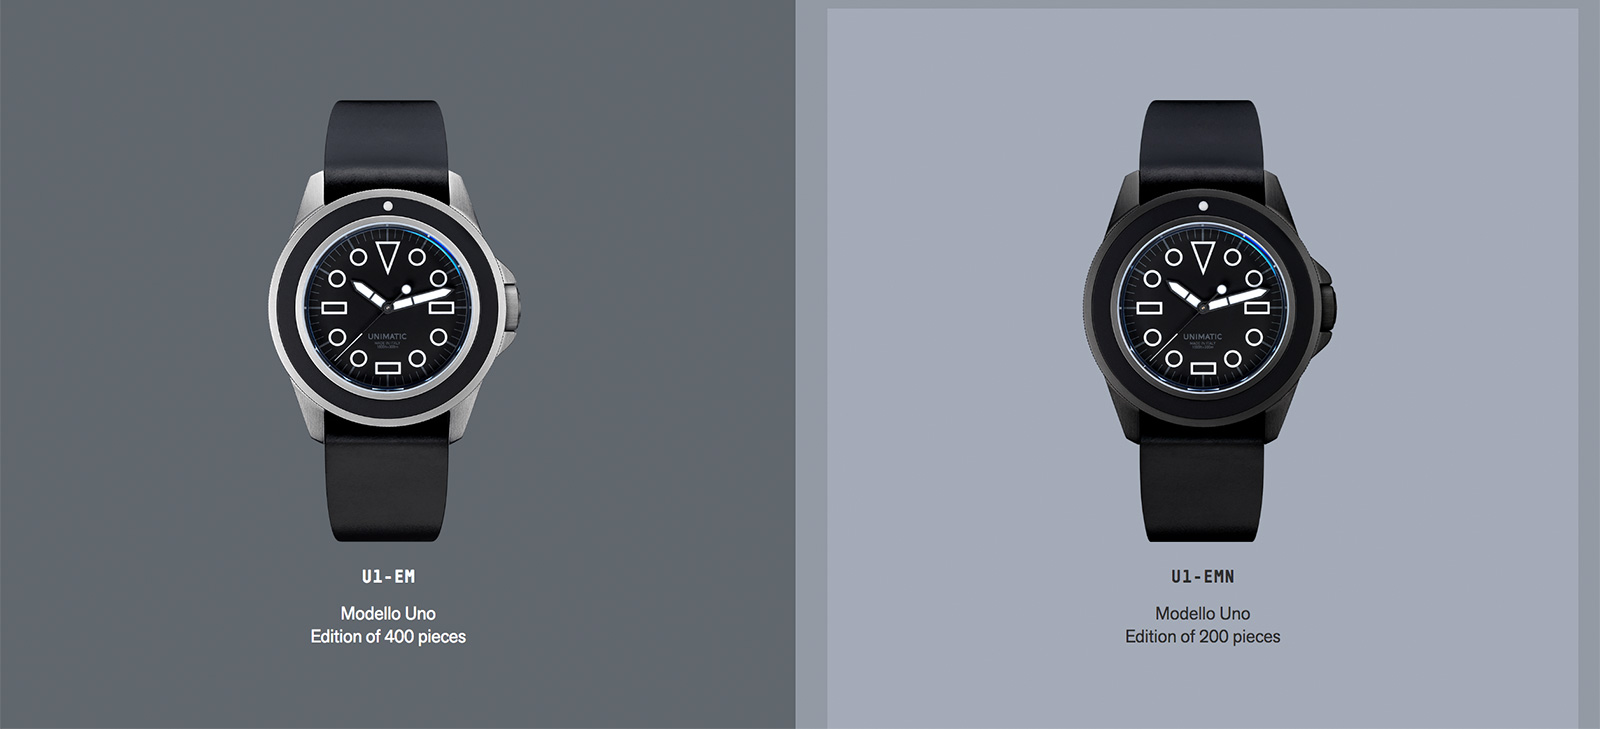 В останні роки з'явилося безліч нових годинникових брендів, деякі з них цікаві, наприклад, Unimatic випускають обмежені серії в сегменті до 1000 Євро, та й сам дизайн годин цікавий, так само як і матеріали